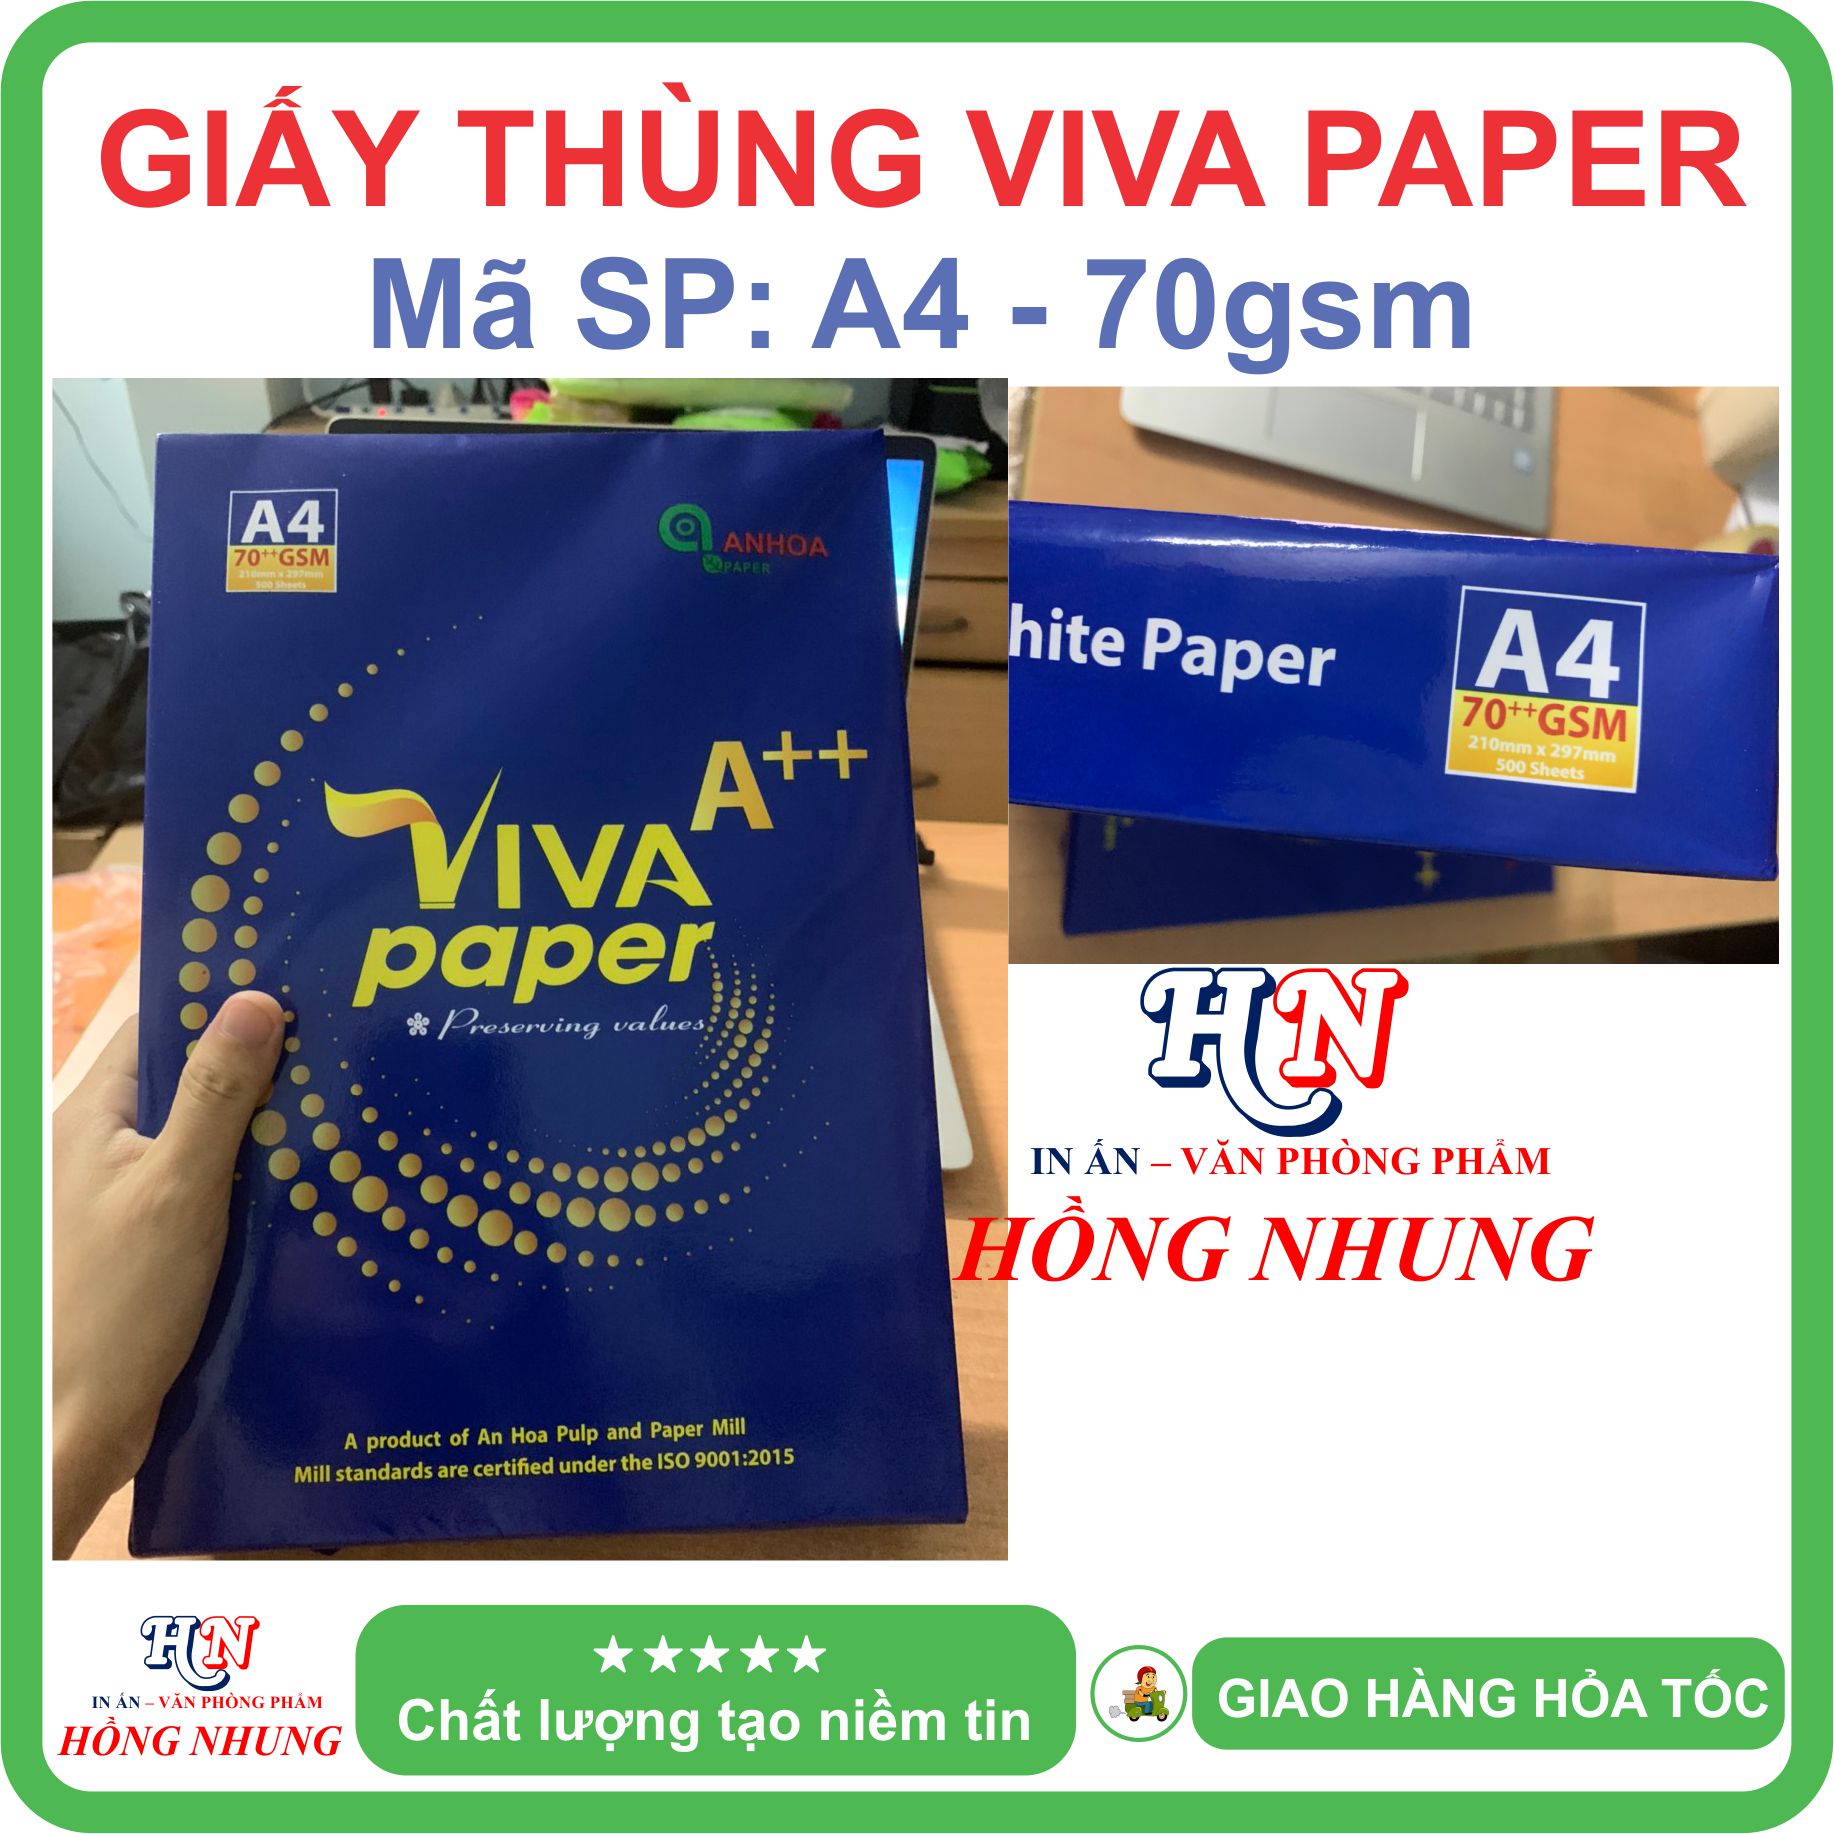 [ HỒNG NHUNG ] Giấy in Viva Paper A4, Định lượng 70gsm - Giấy thùng, trắng mịn, không lo kẹt giấy